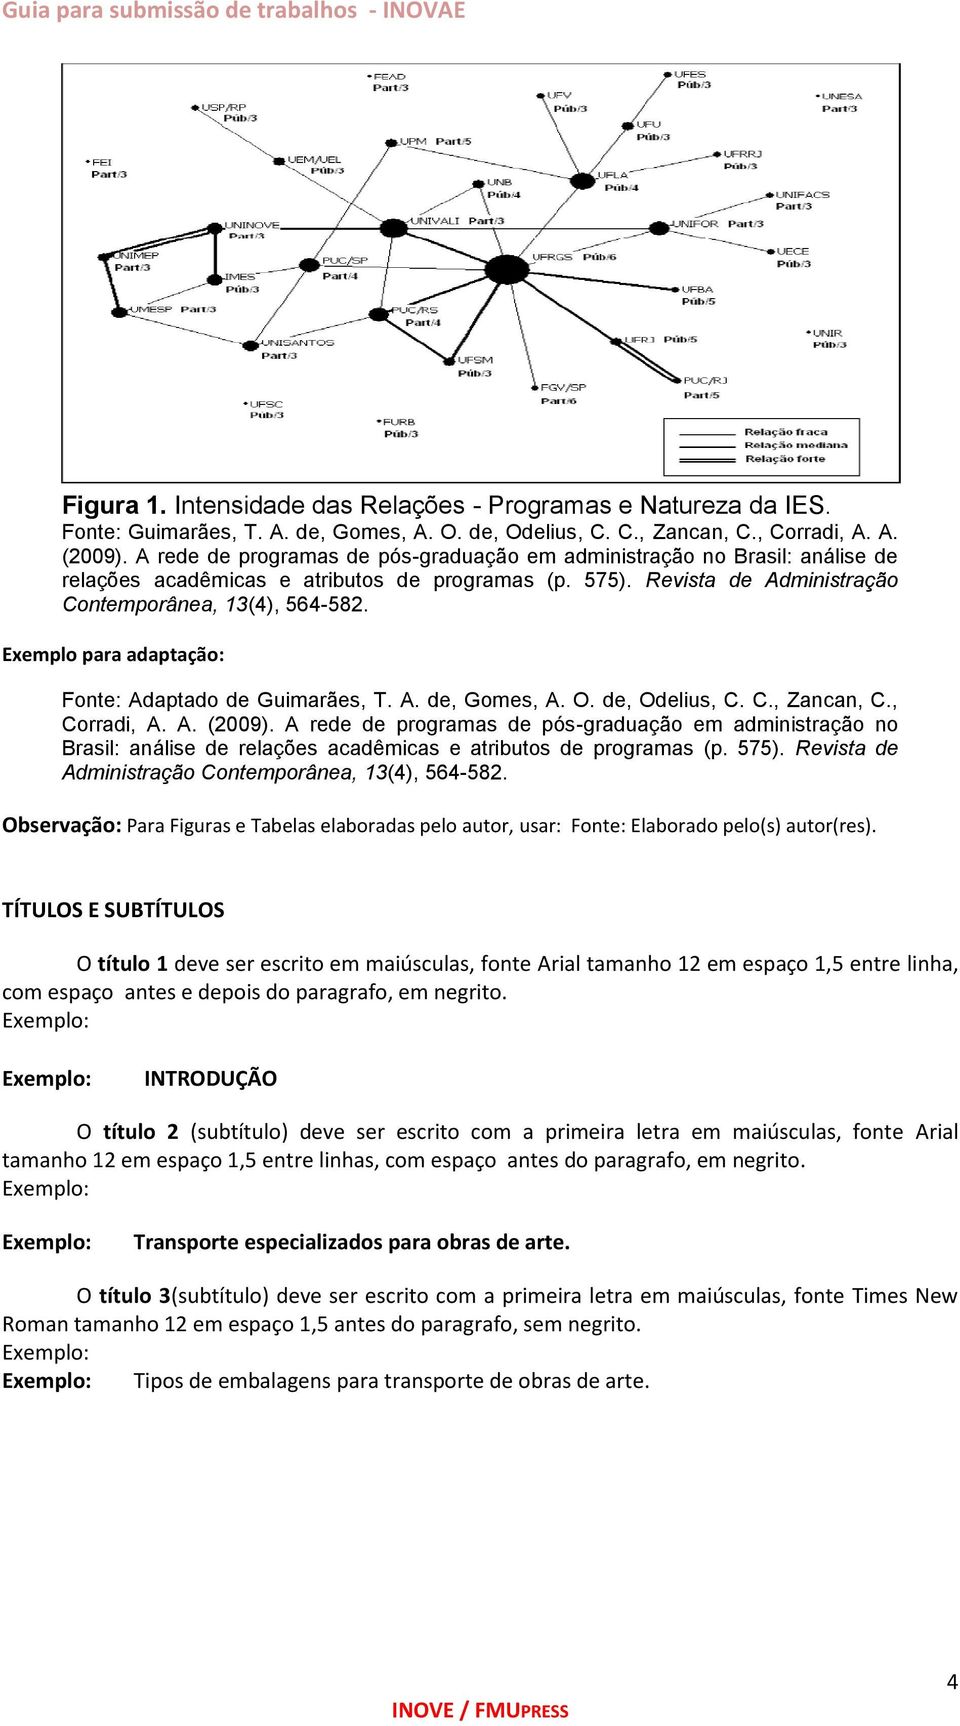 Exemplo para adaptação: Fonte: Adaptado de Guimarães, T. A. de, Gomes, A. O. de, Odelius, C. C., Zancan, C., Corradi, A. A. (2009).